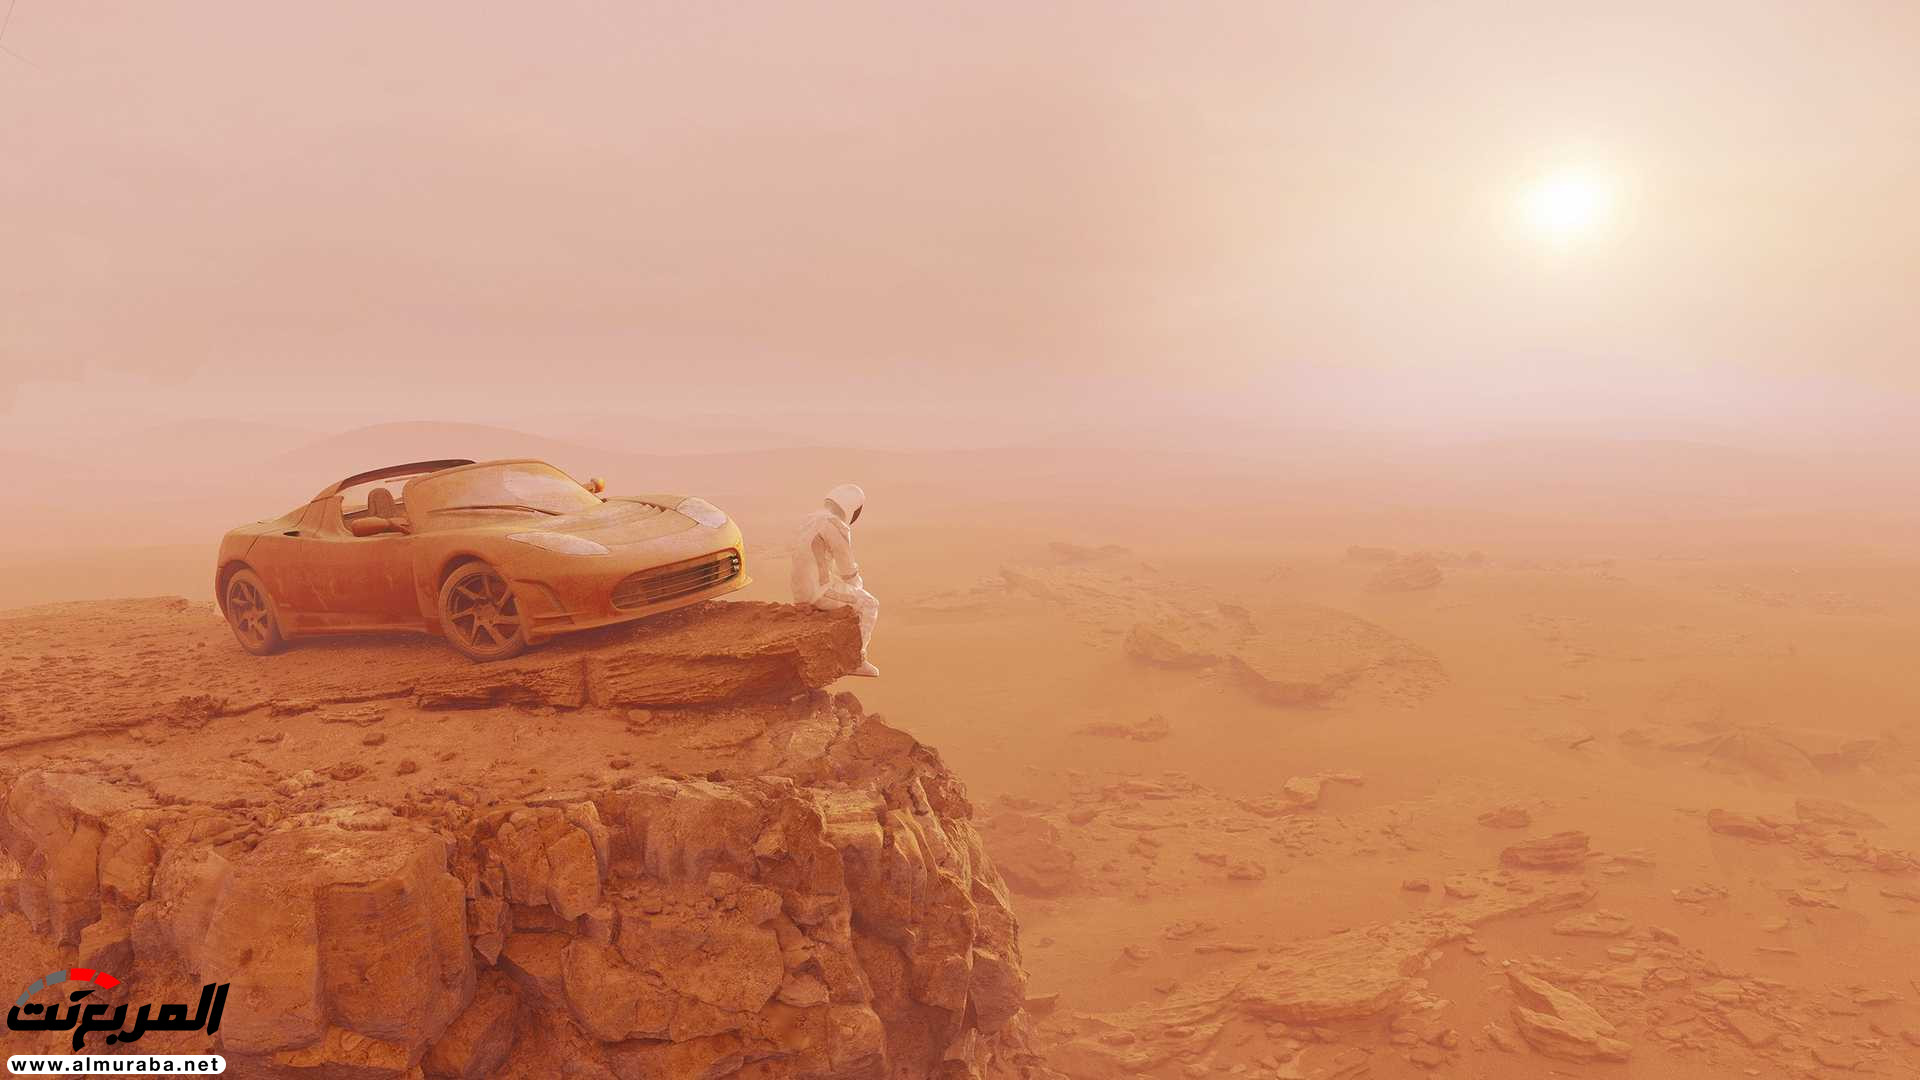 تيسلا رودستر وصلت إلى المريخ في صور تخيلية 2